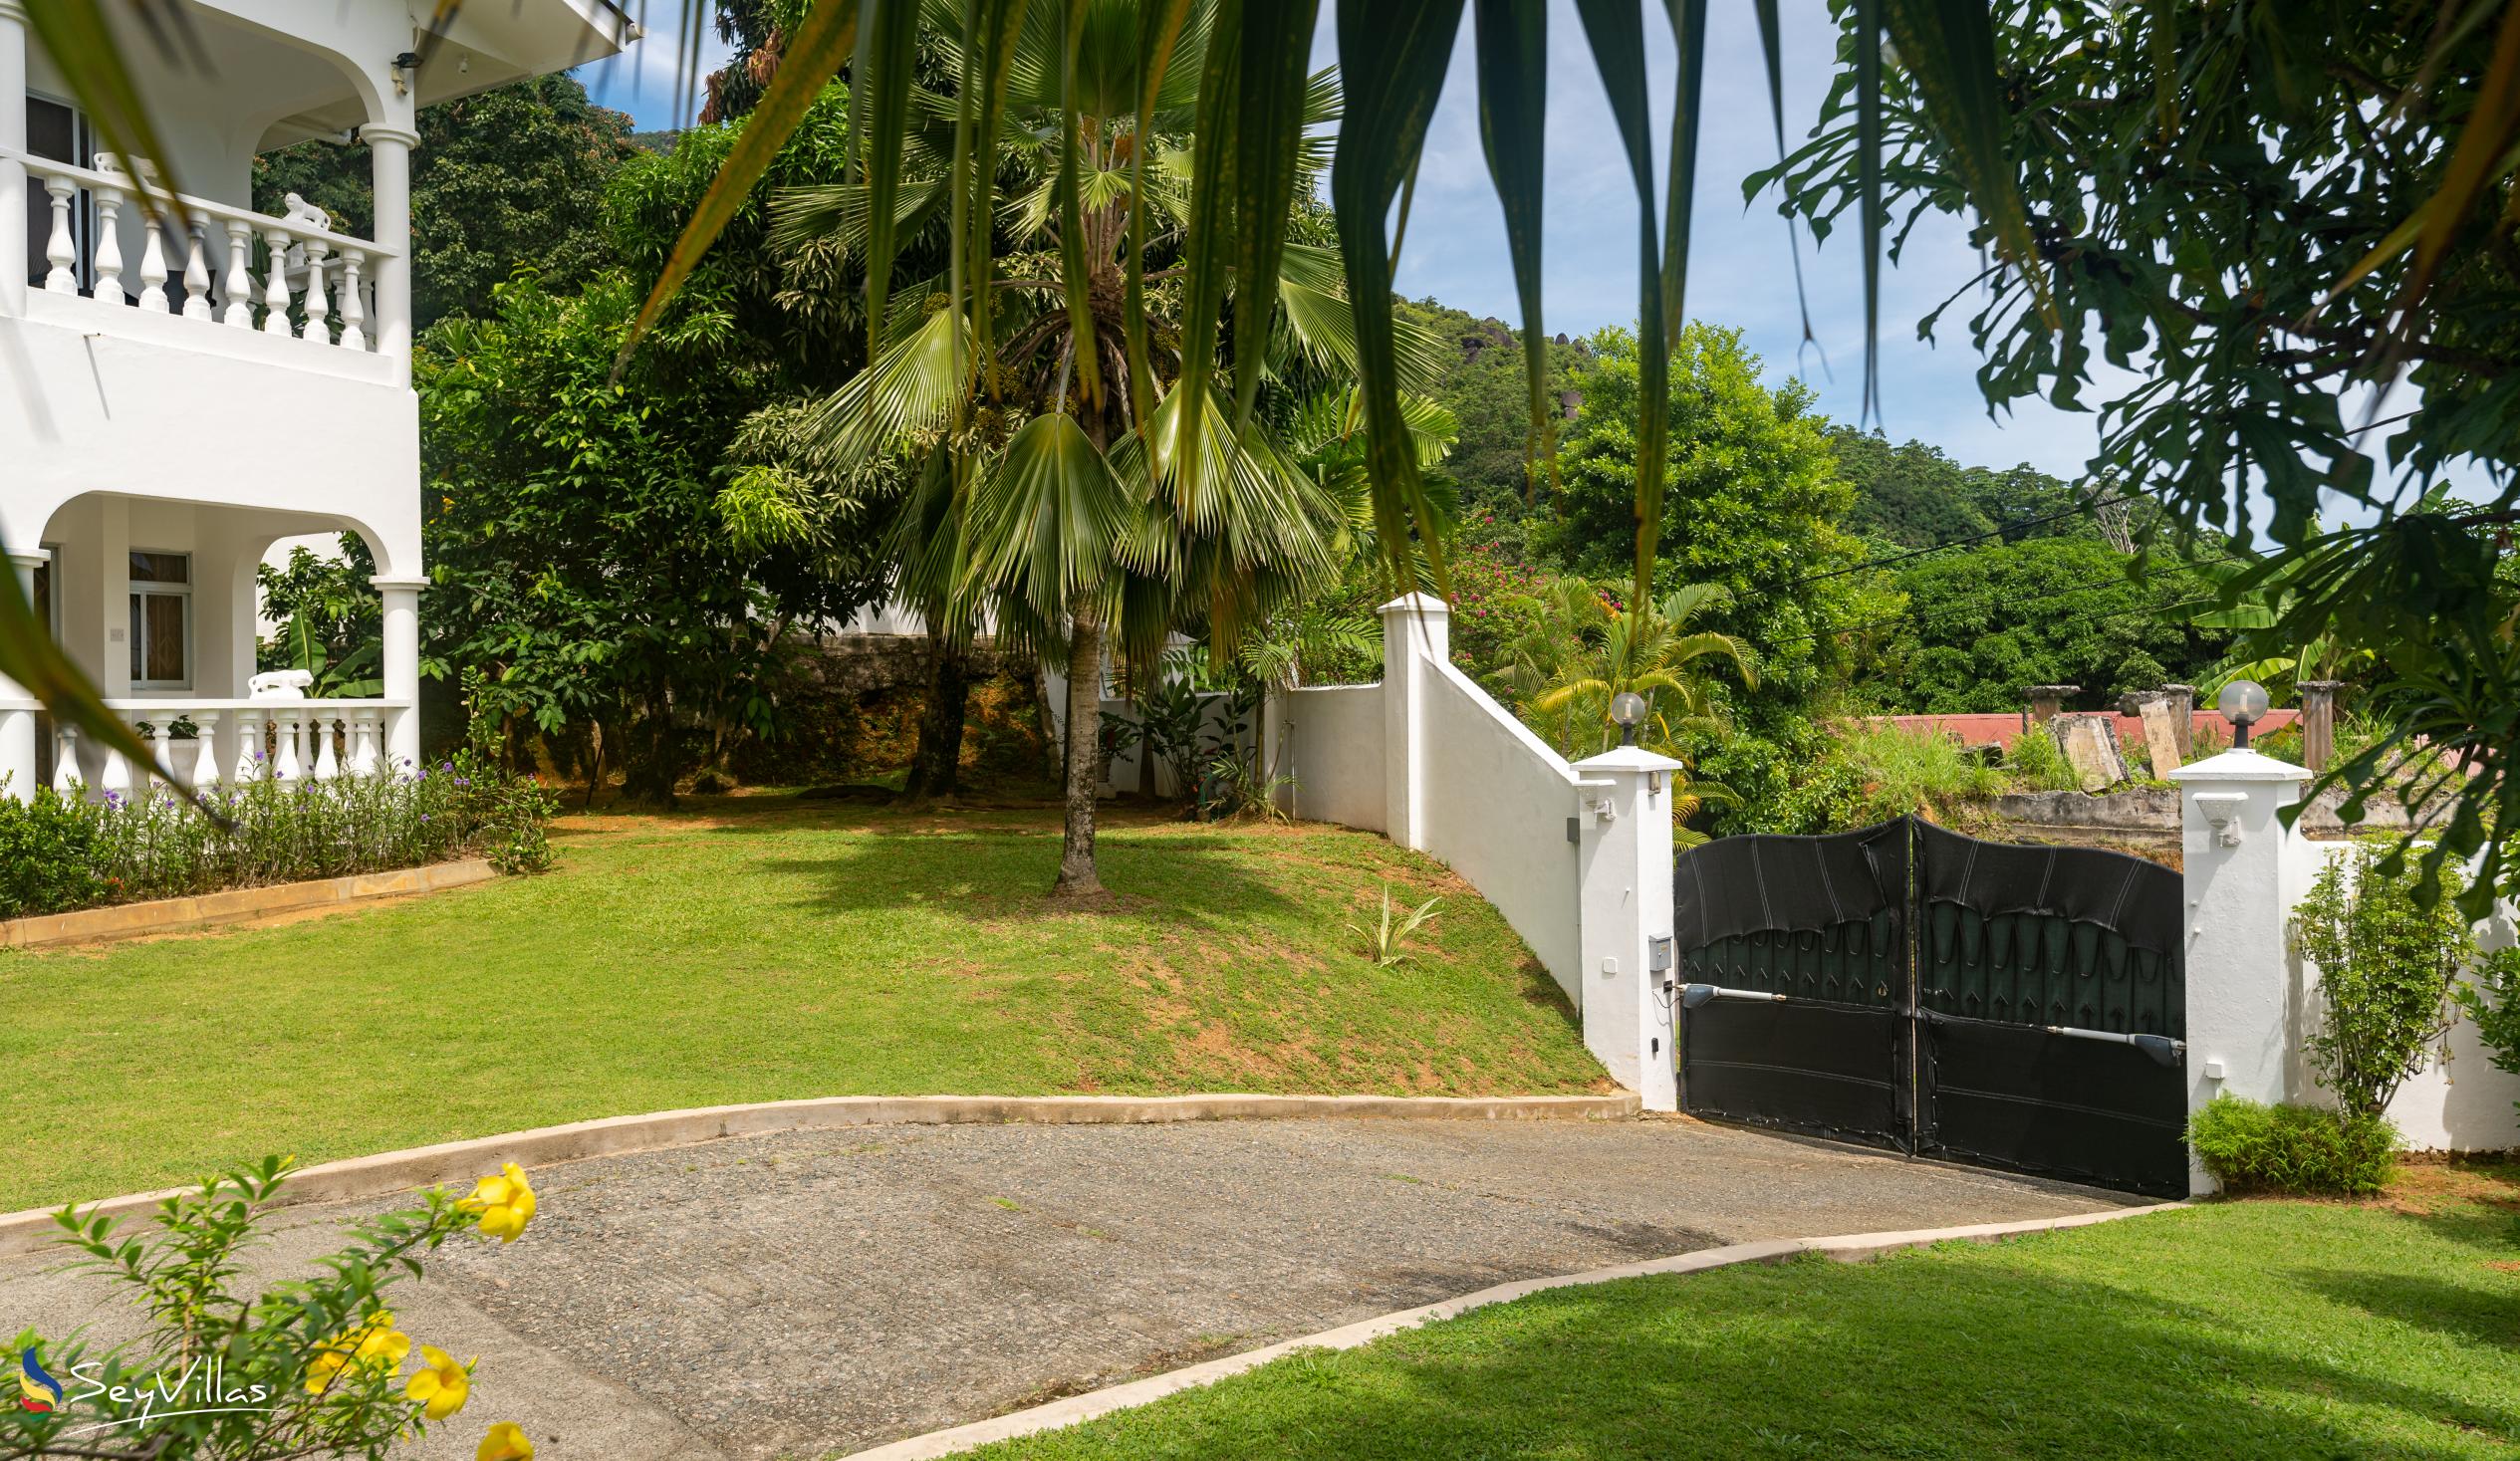 Foto 19: Villa Verde - Aussenbereich - Mahé (Seychellen)